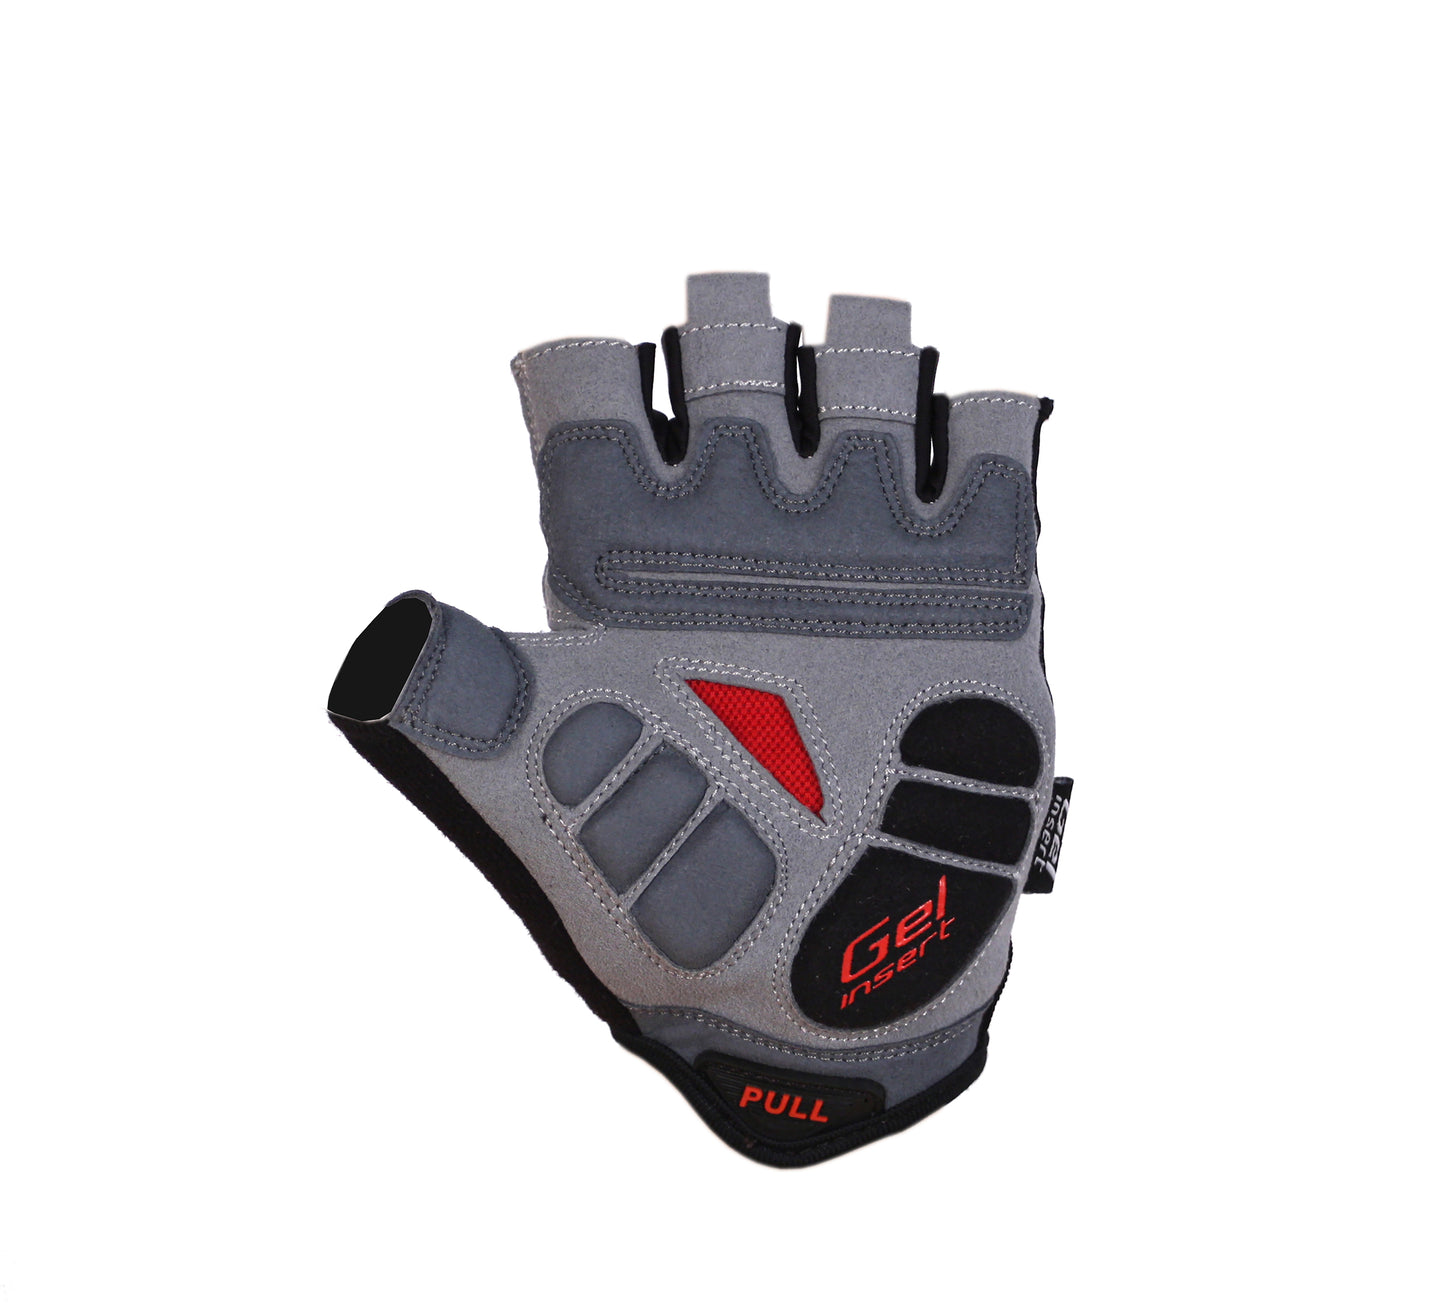 BG-04 Fingerless bike gloves for competitions